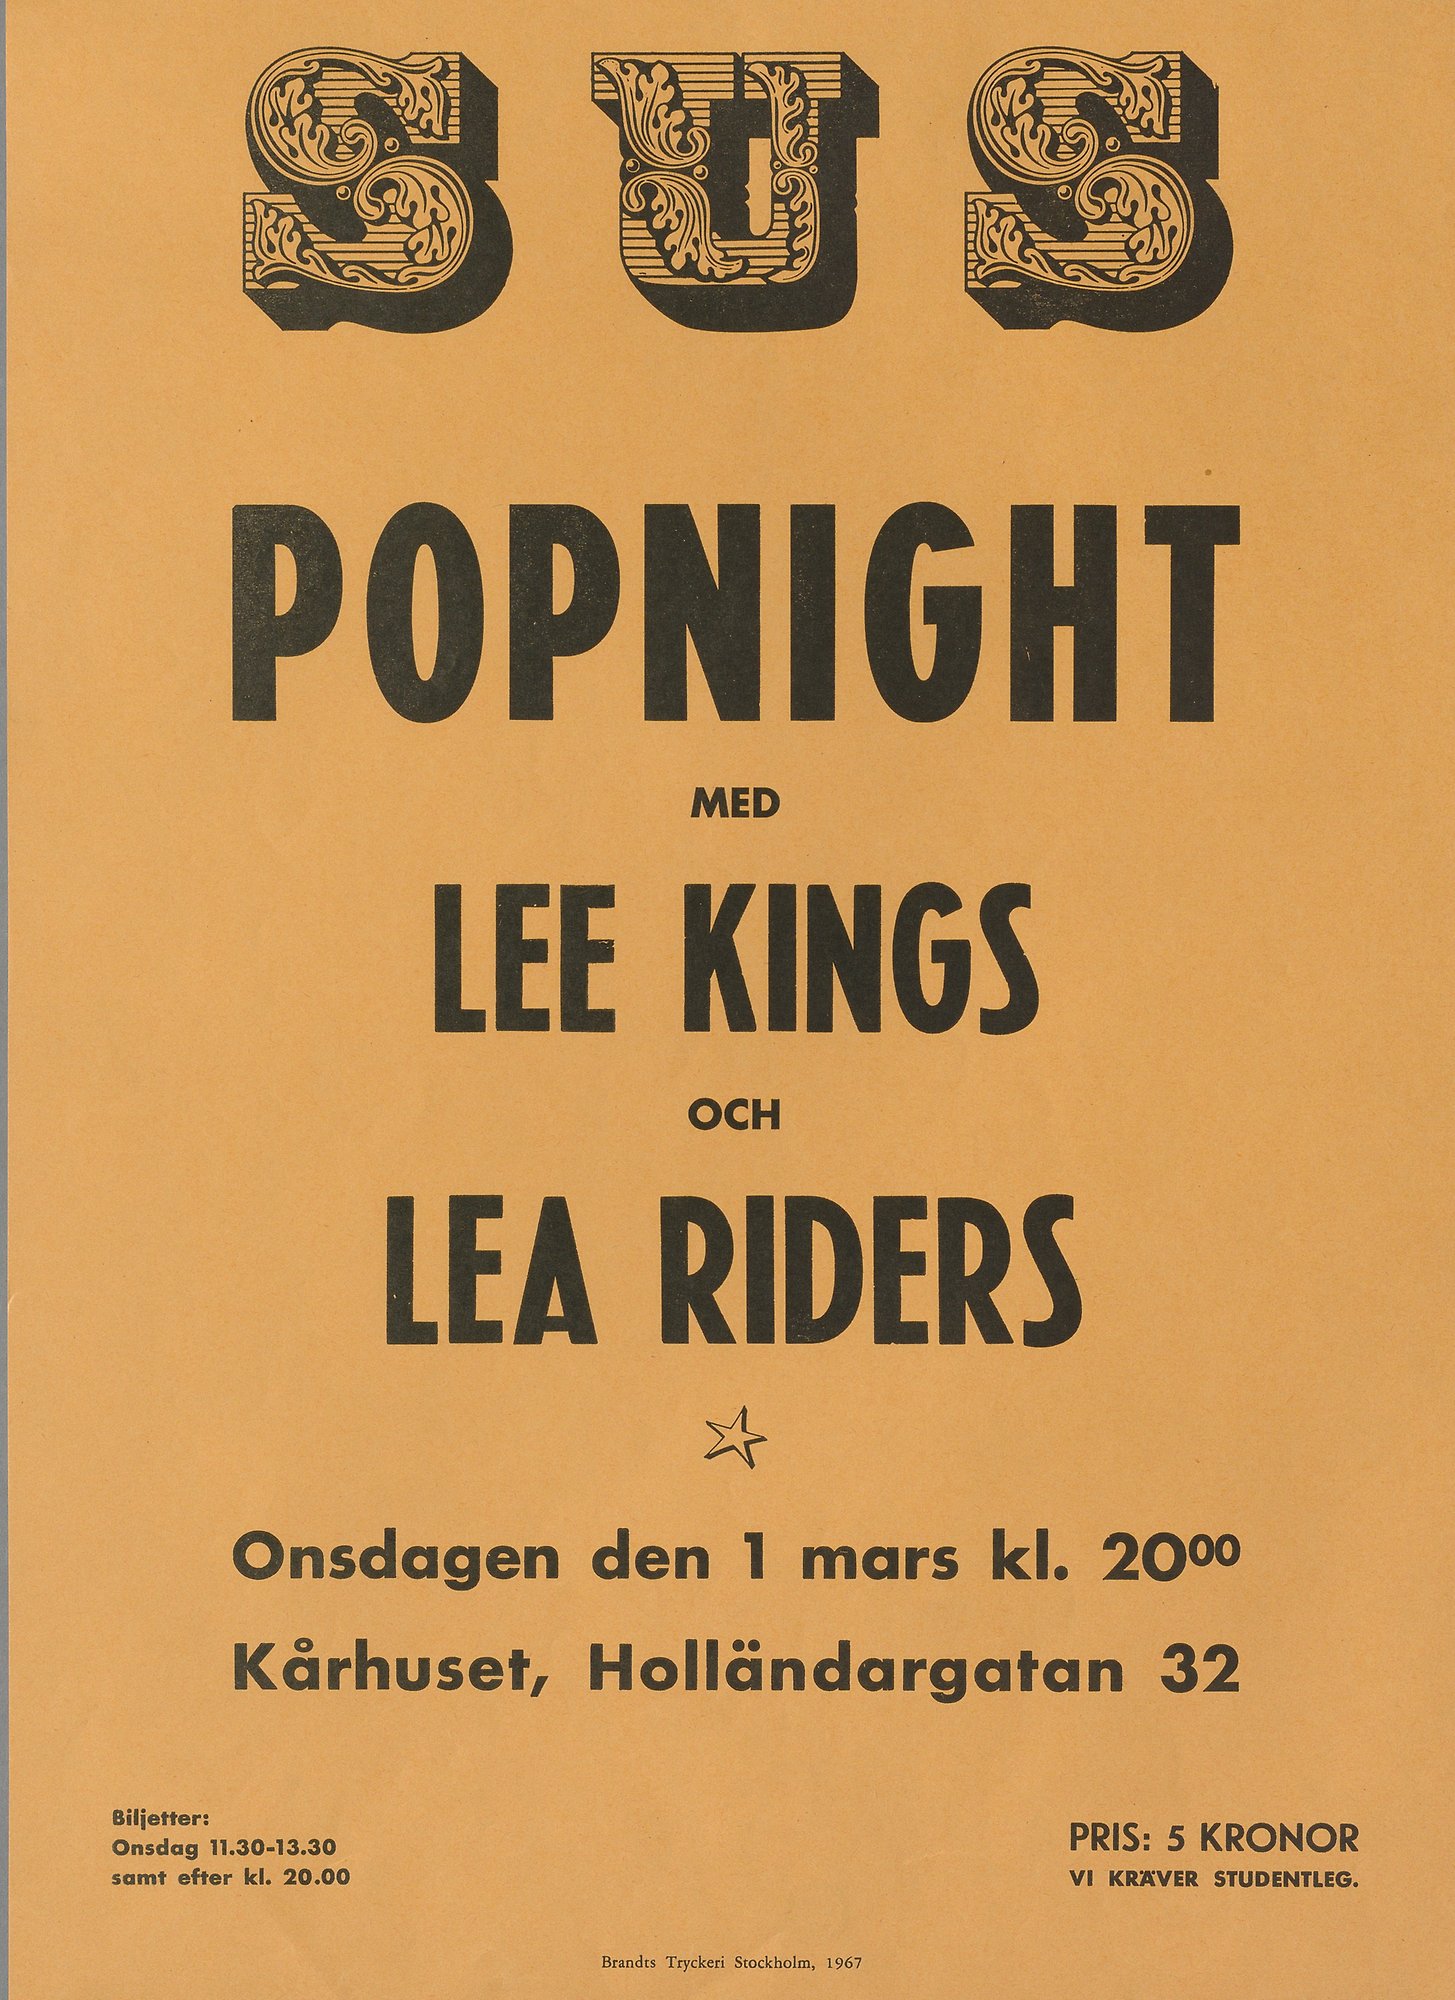 Gul affisch. Text: Popnight med Lee Kings och Lea Riders